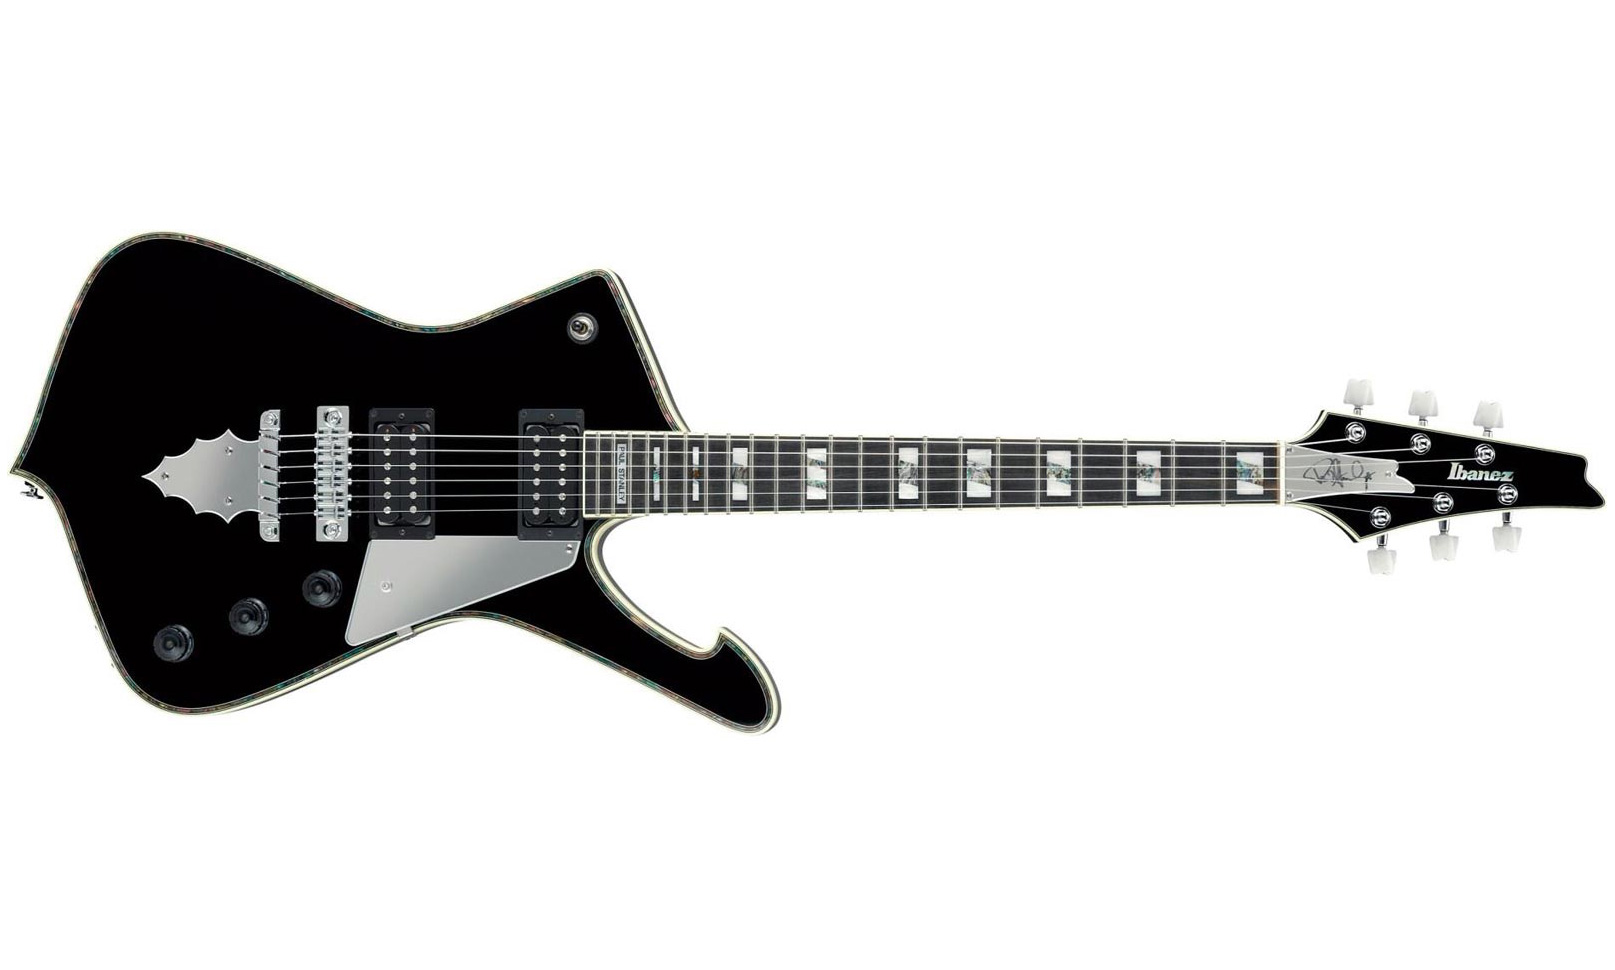 Ibanez Paul Stanley Ps10 Bk Japon Signature Hh Seymour Duncan Ht Eb - Black - Metal electric guitar - Variation 1